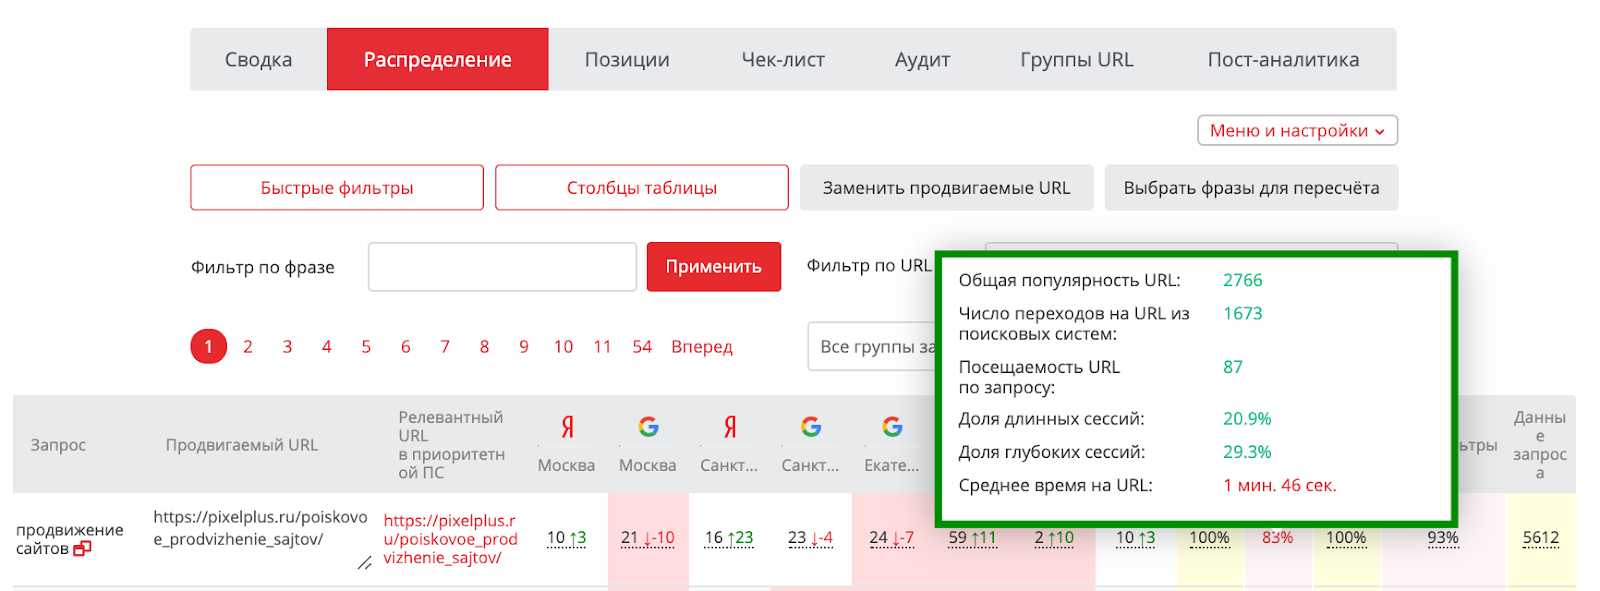 Анализ поведенческих факторов с помощью доступа к Яндекс.Метрике